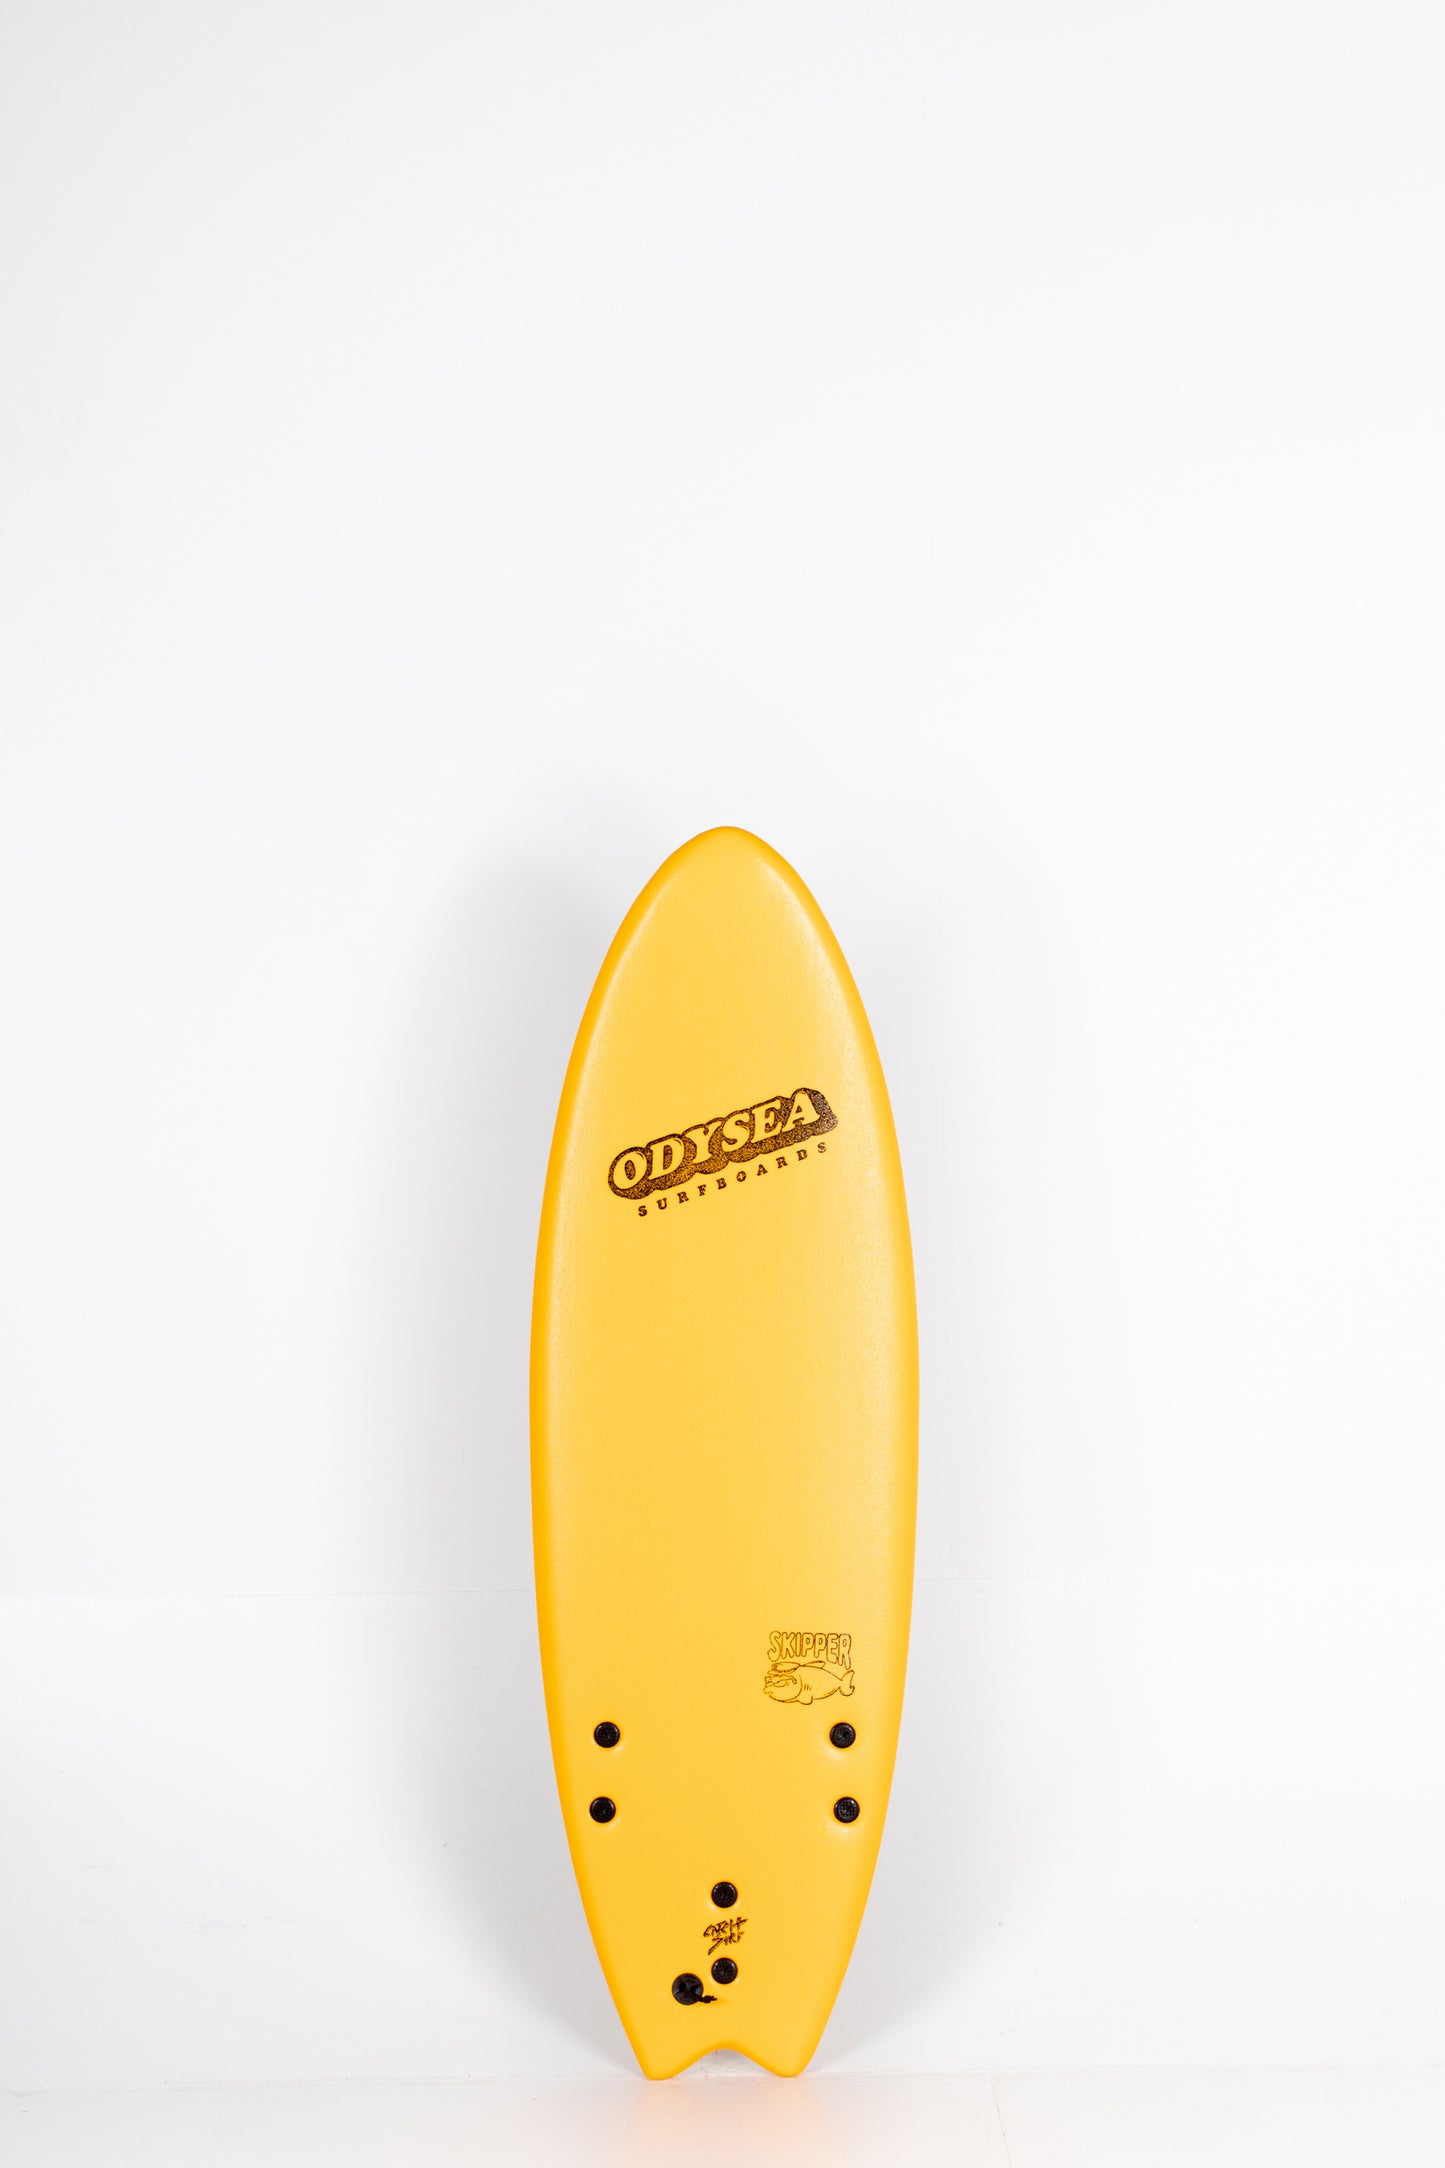 Pukas Surf Shop - Catch Surf - SKIPPER THRUSTER x TAJ BURROW PRO - 5'6" x 21" x 2,875" x 42L.